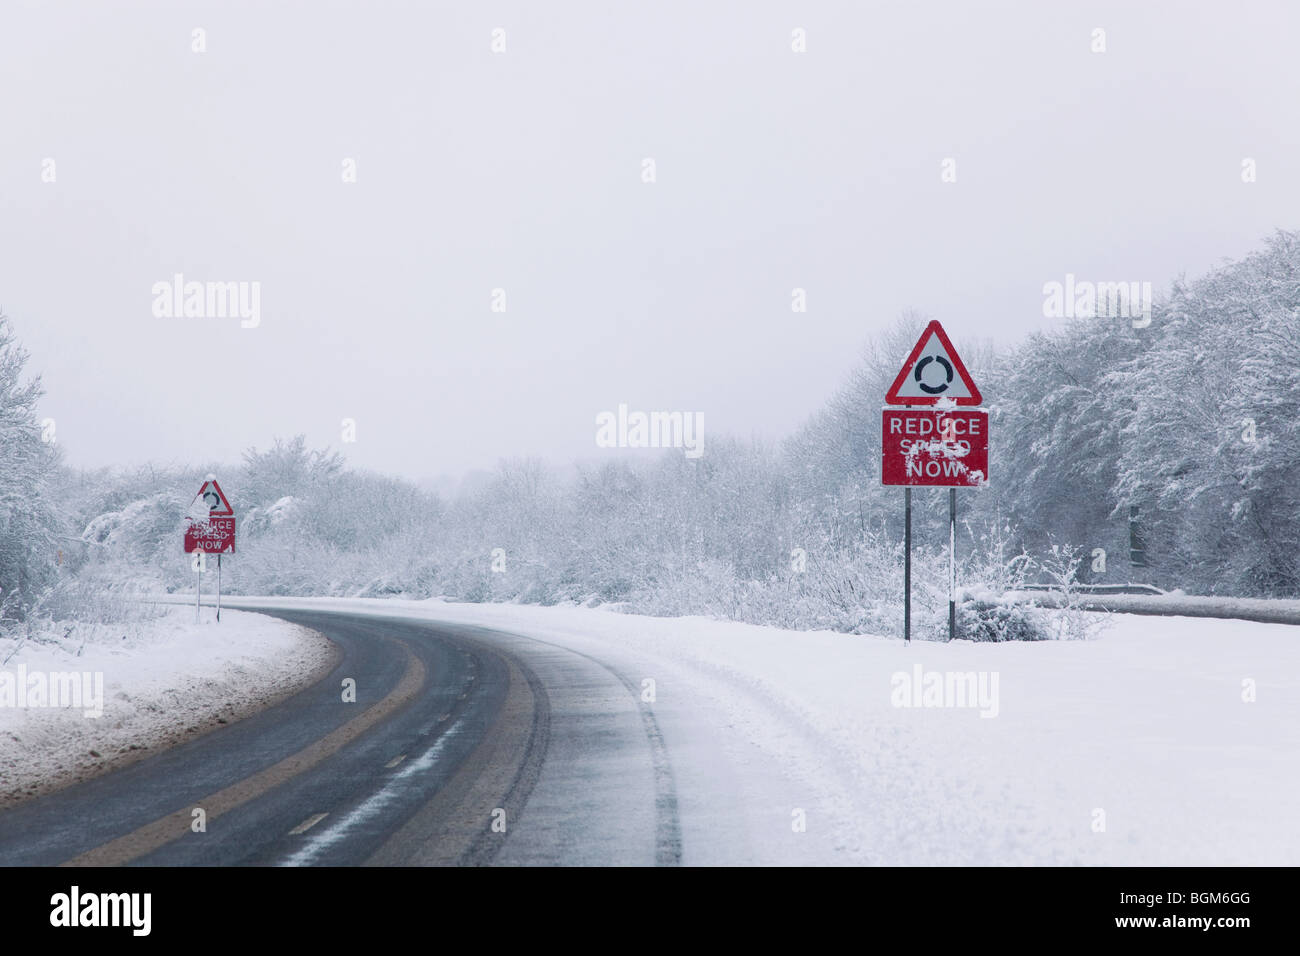 Strada con il ridurre la velocità adesso firma durante la caduta di neve dell'inverno 2010 Foto Stock